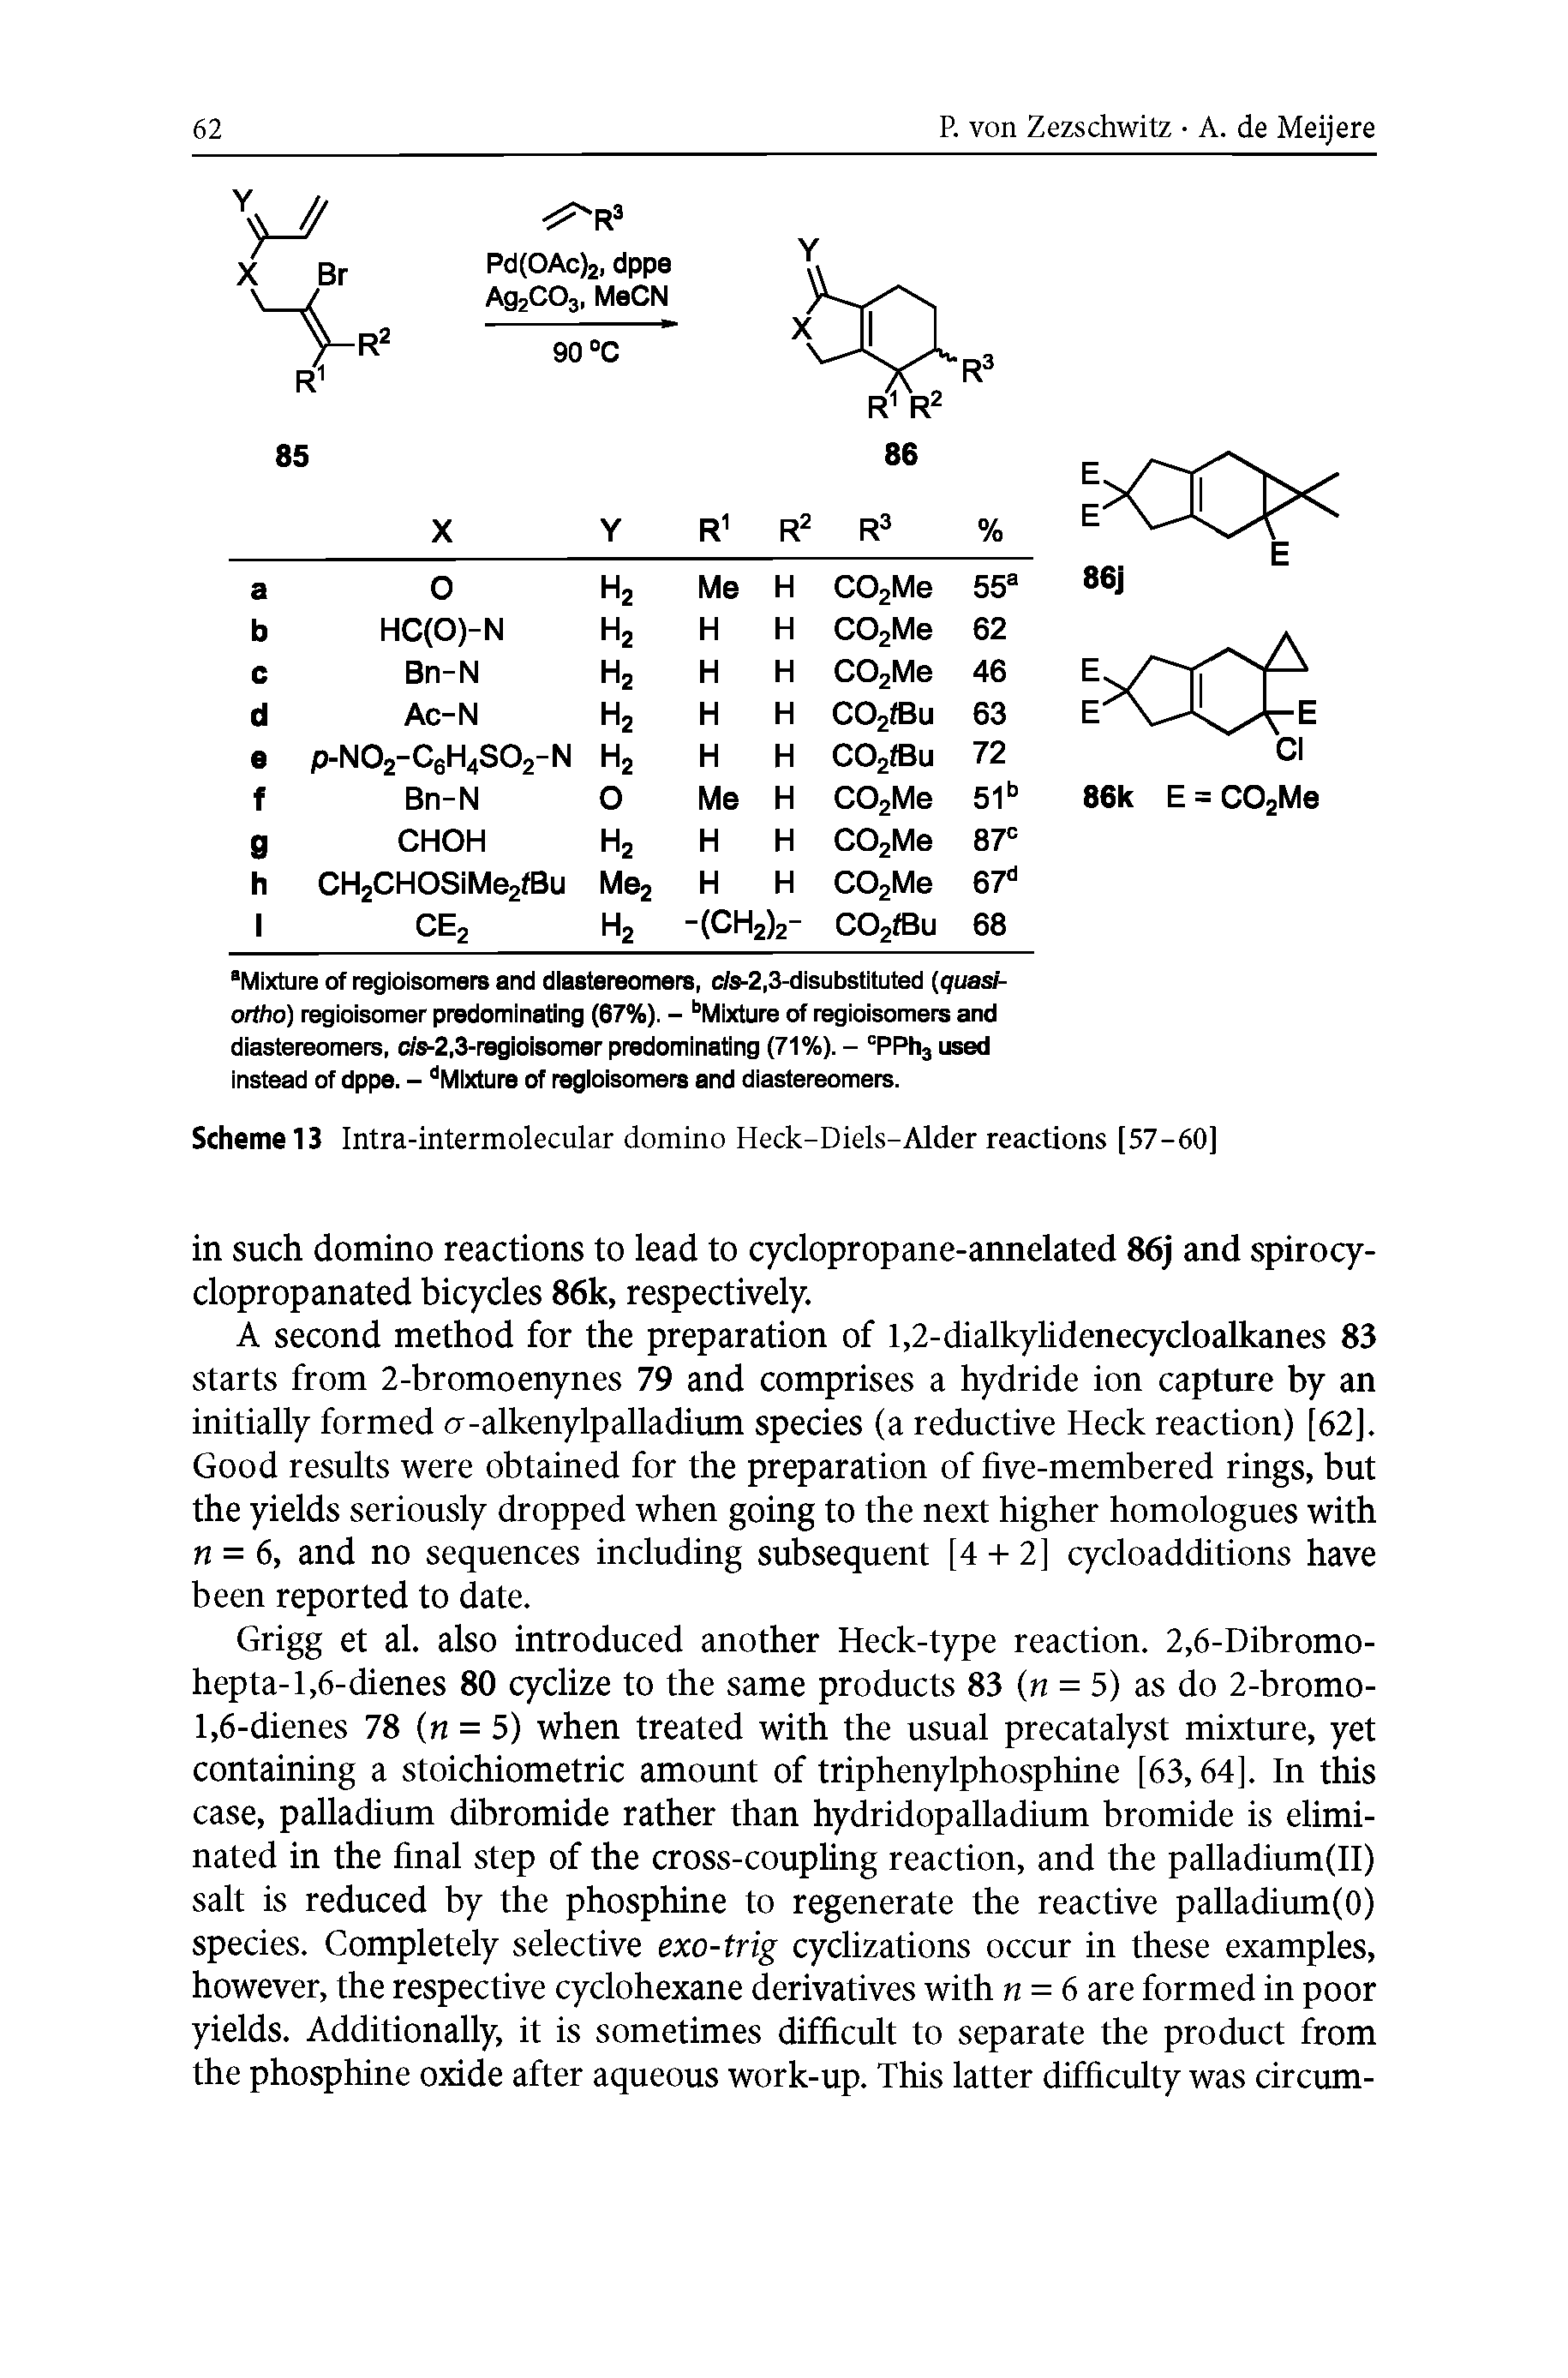 Scheme 13 Intra-intermolecular domino Heck-Diels-Alder reactions [57-60]...